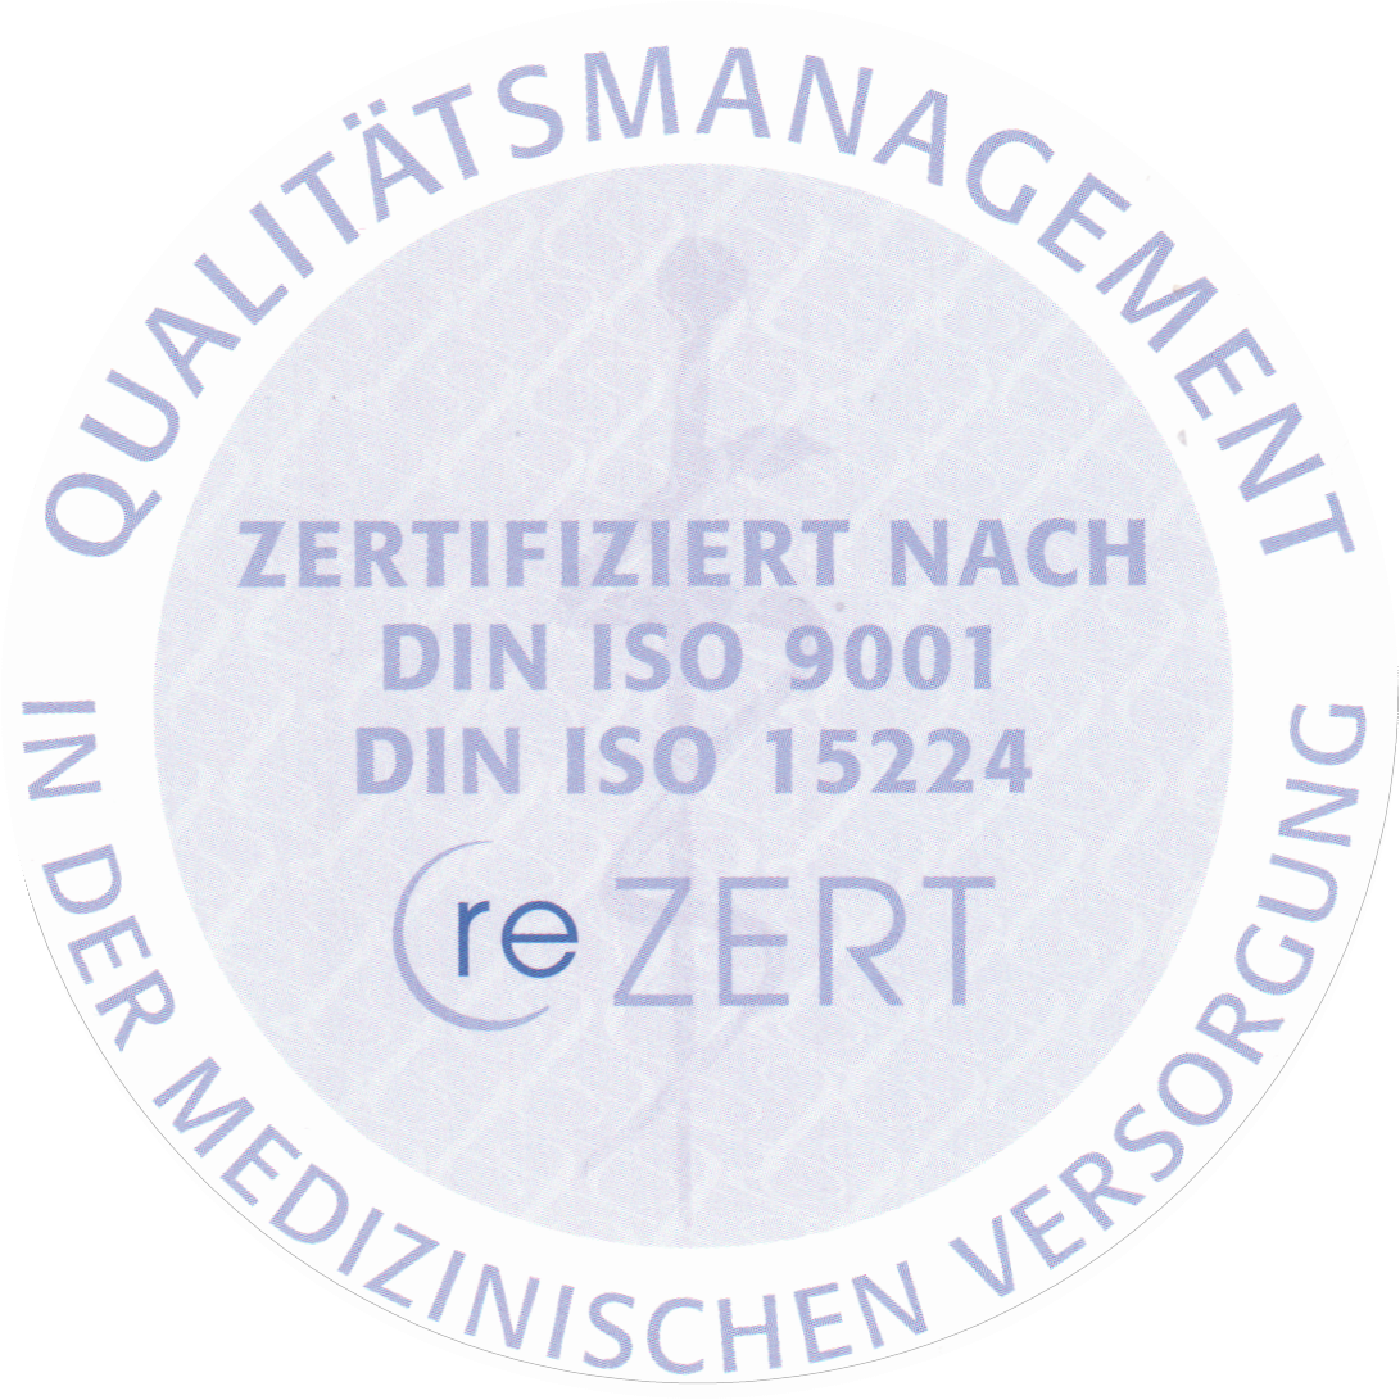 Unsere Praxis ist nach DIS ISO EN 9001:2008 und DIN ISO EN 15224 zertifiziert.